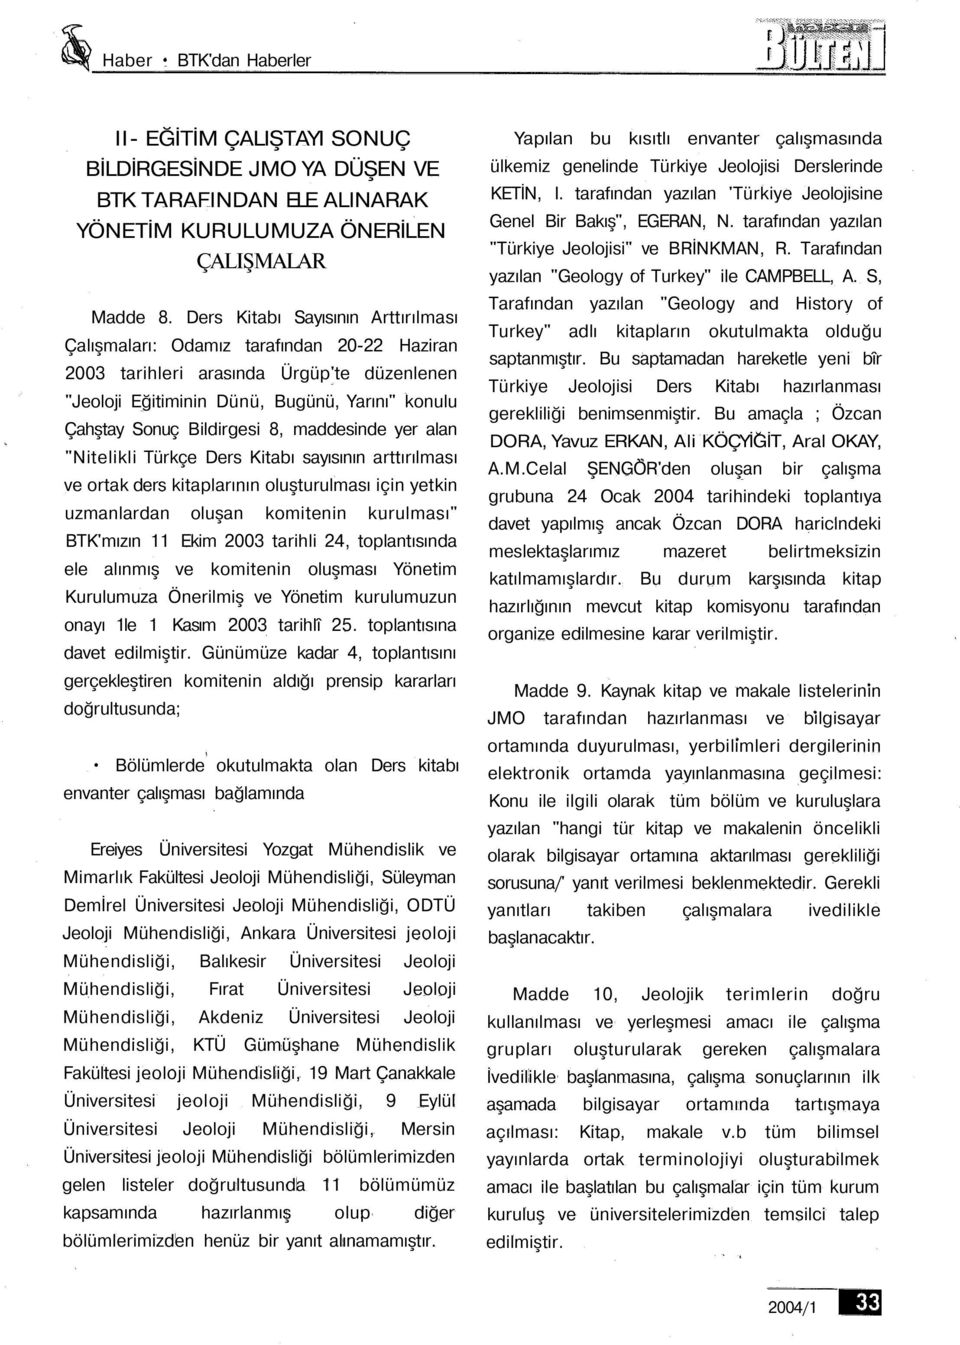 8, maddesinde yer alan "Nitelikli Türkçe Ders Kitabı sayısının arttırılması ve ortak ders kitaplarının oluşturulması için yetkin uzmanlardan oluşan komitenin kurulması" BTK'mızın 11 Ekim 2003 tarihli